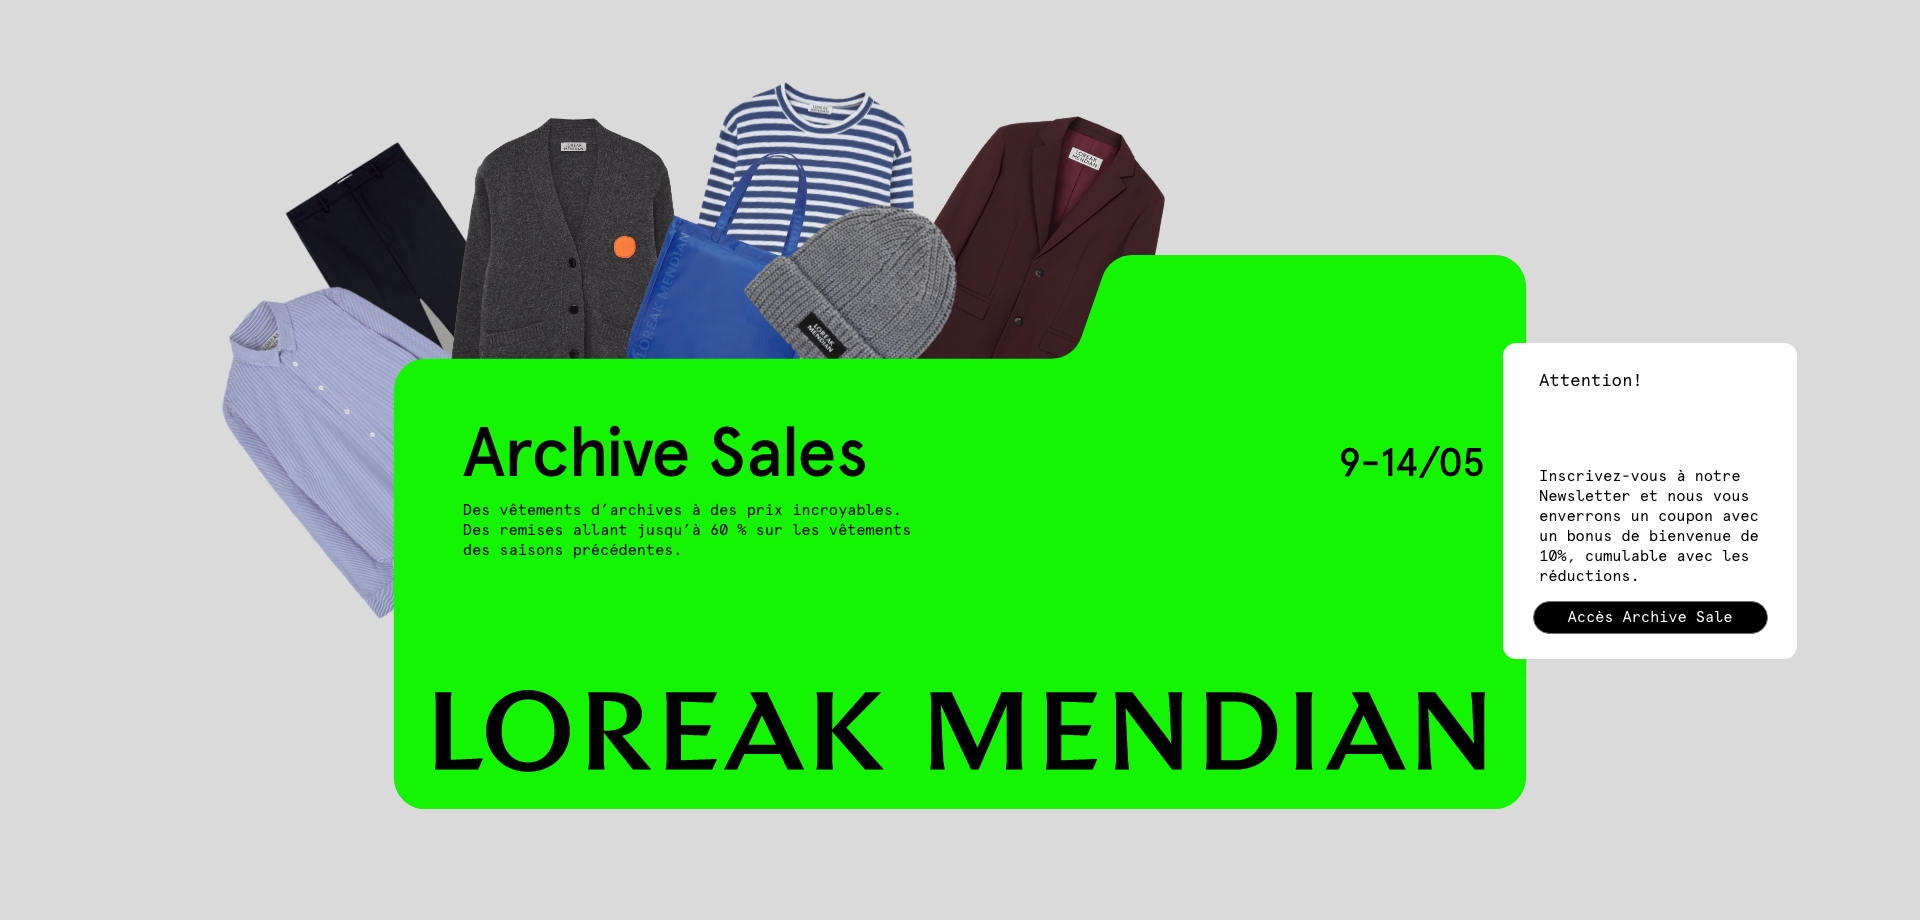 Archive Sales” title=